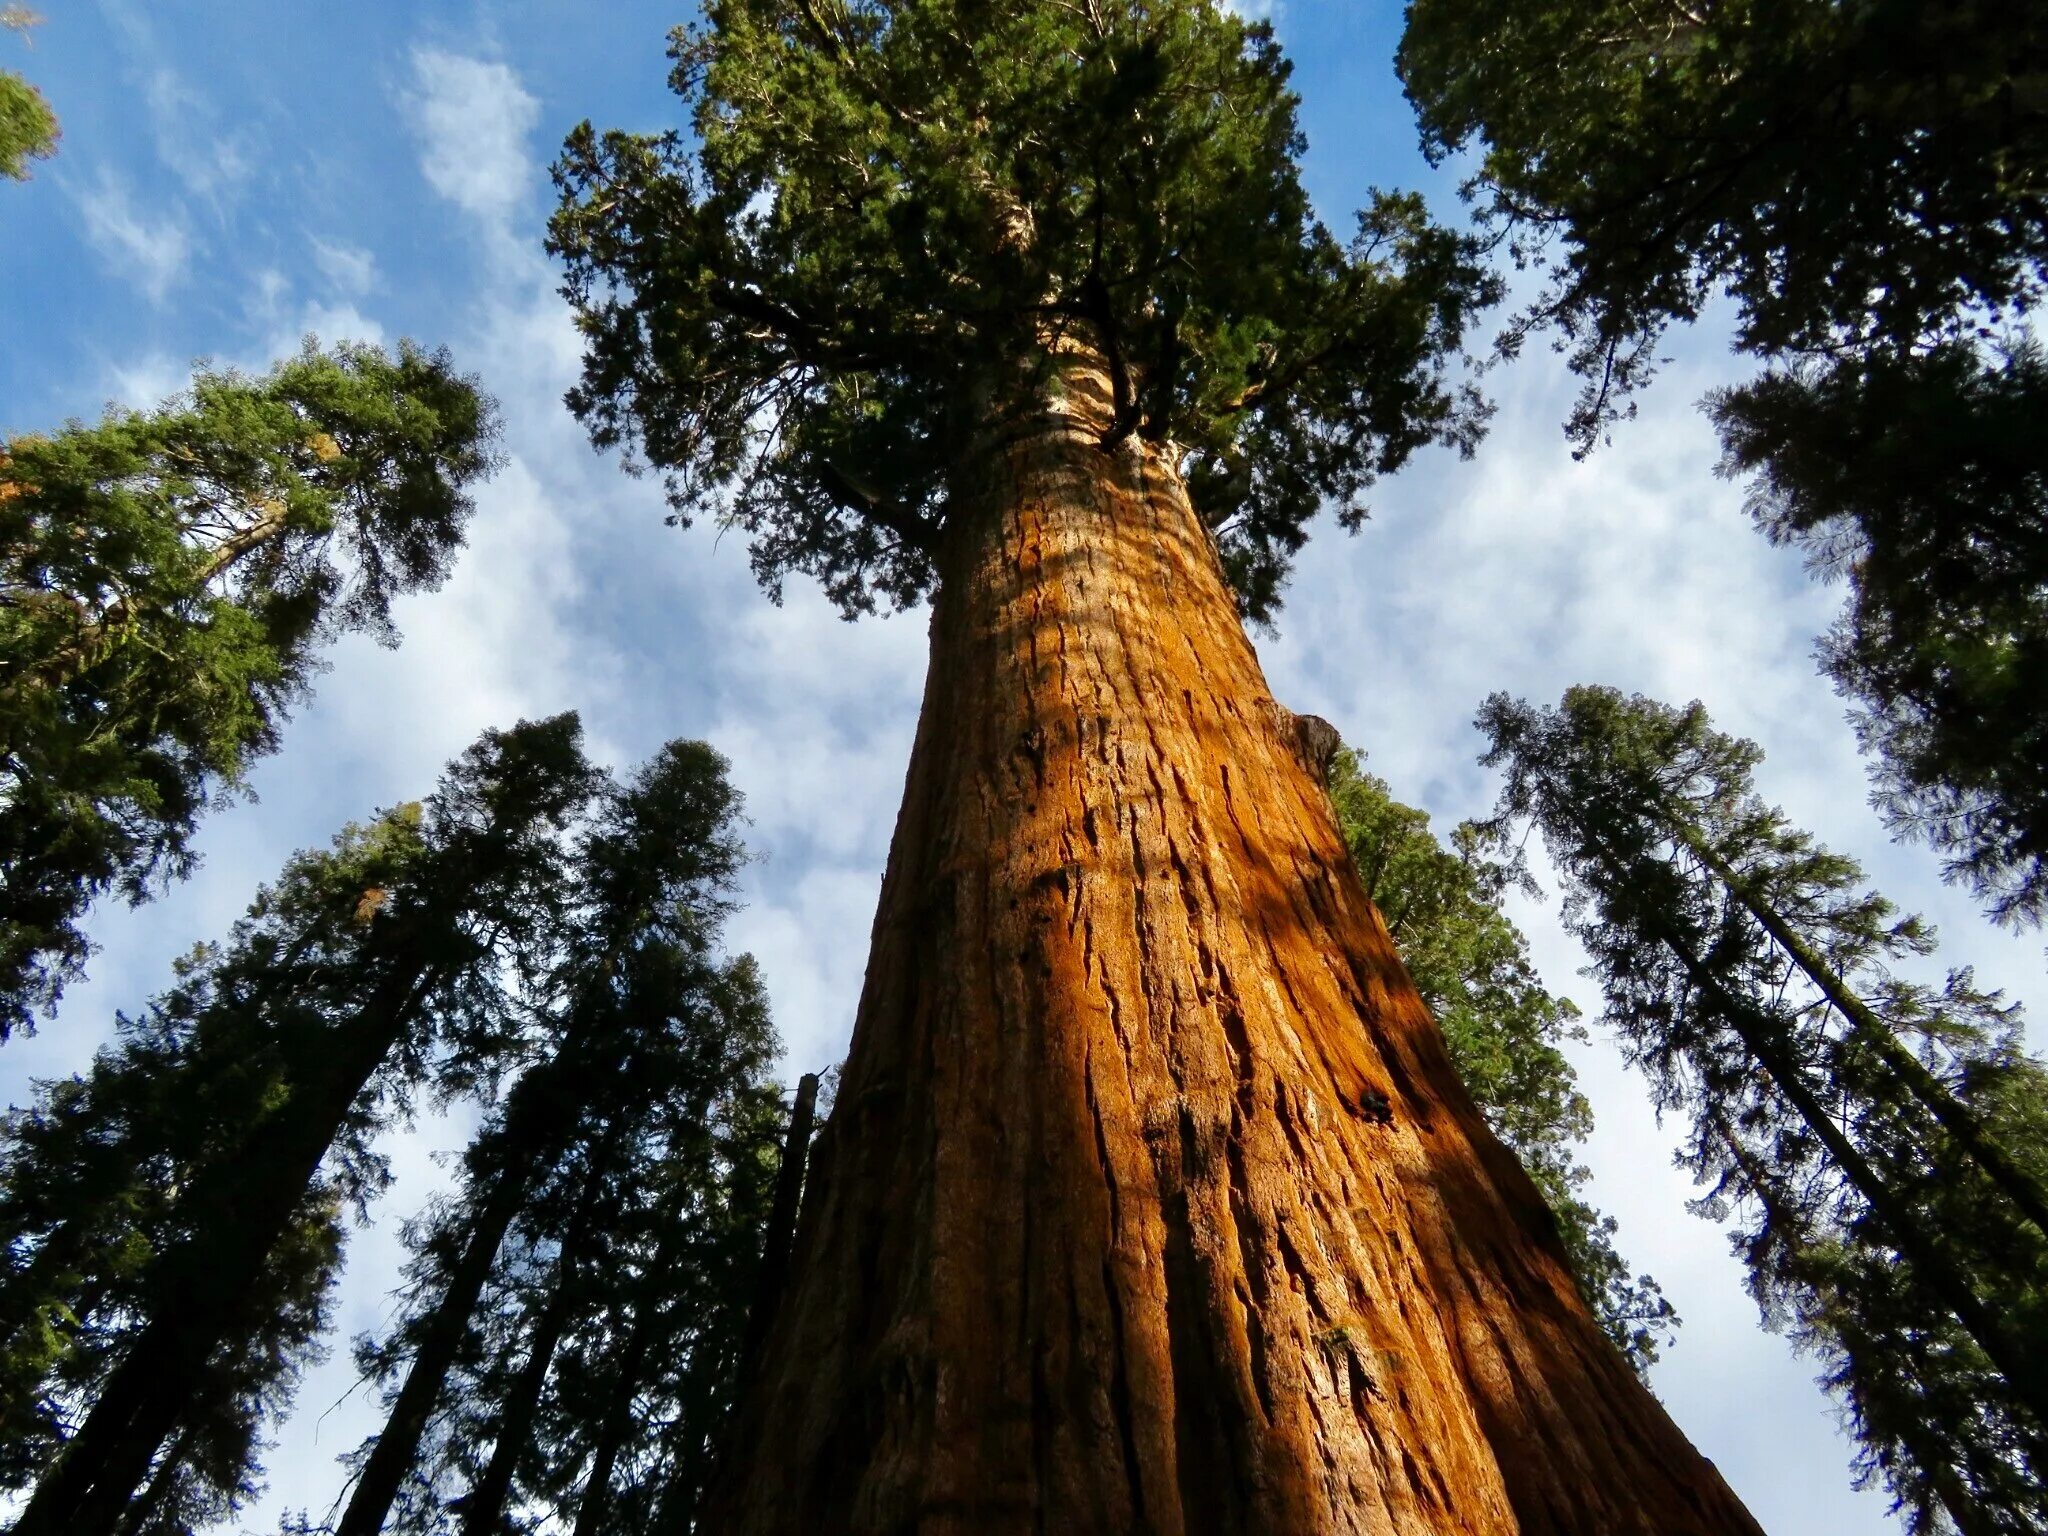 Калифорнийская Секвойя Гиперион. Секвойя дерево Гиперион. Лес секвой в Абхазии. Секвойя вечнозелёная. Самое высокое дерево на земле природная зона